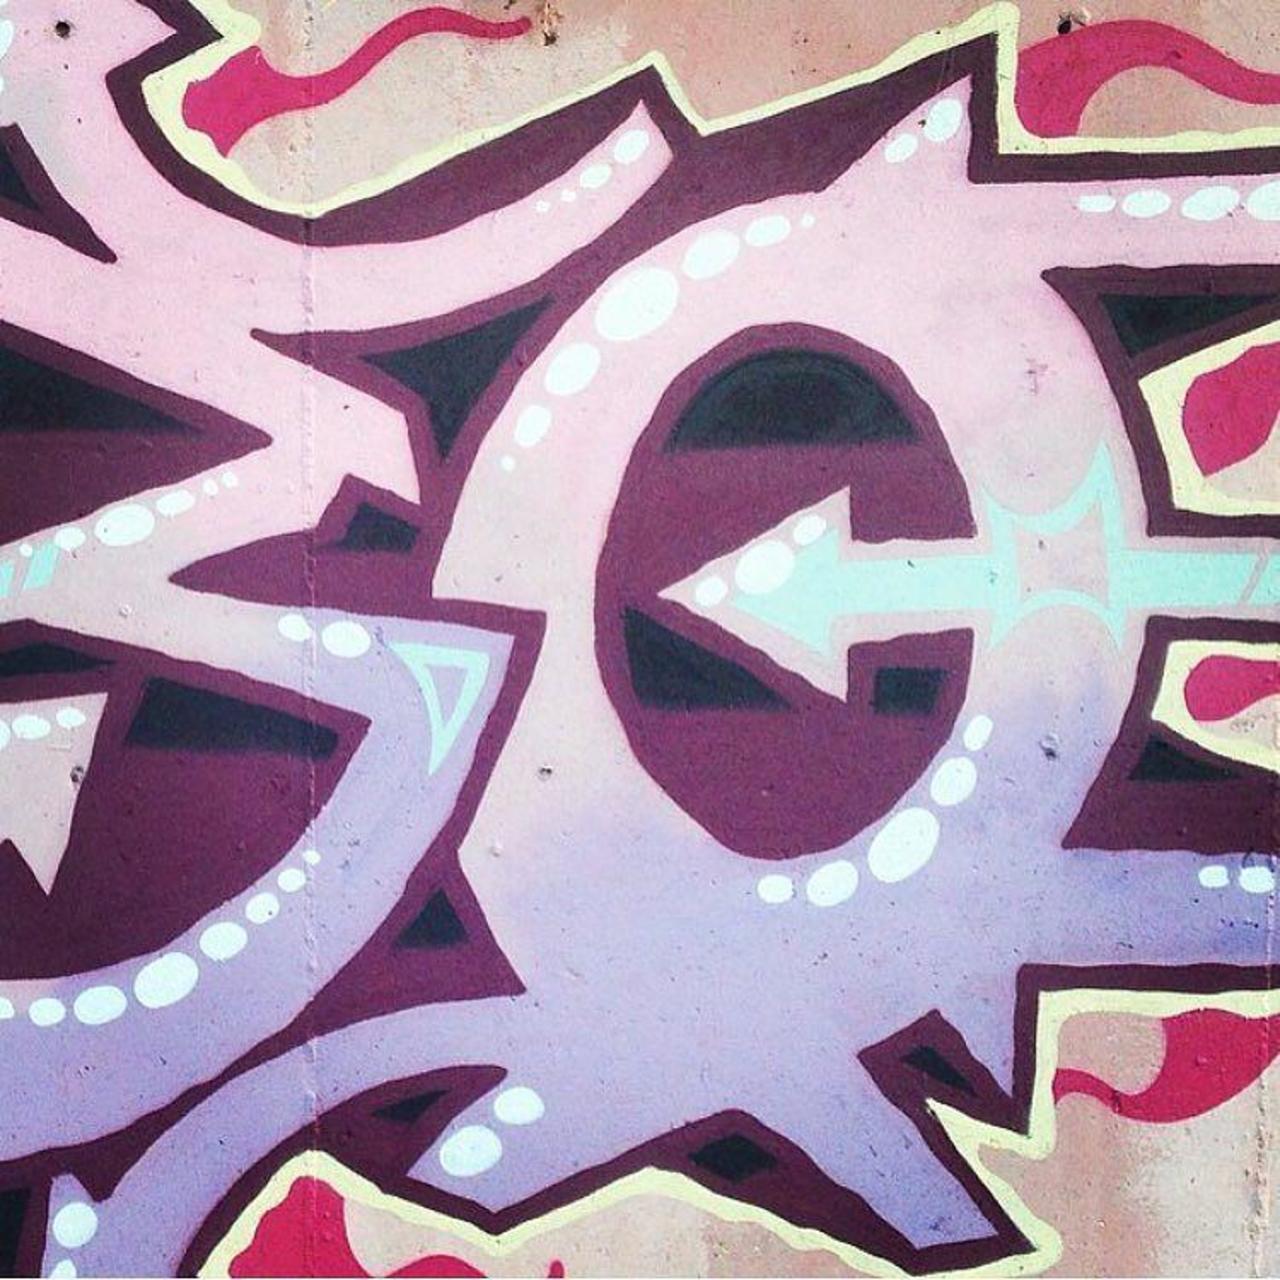 Turbo @tuncdindas #graffiti #graff #graffitiart #turkeygraffiti #graffititurkey #turkishgraffiti #streetart #street… http://t.co/3ebWZCgZG6